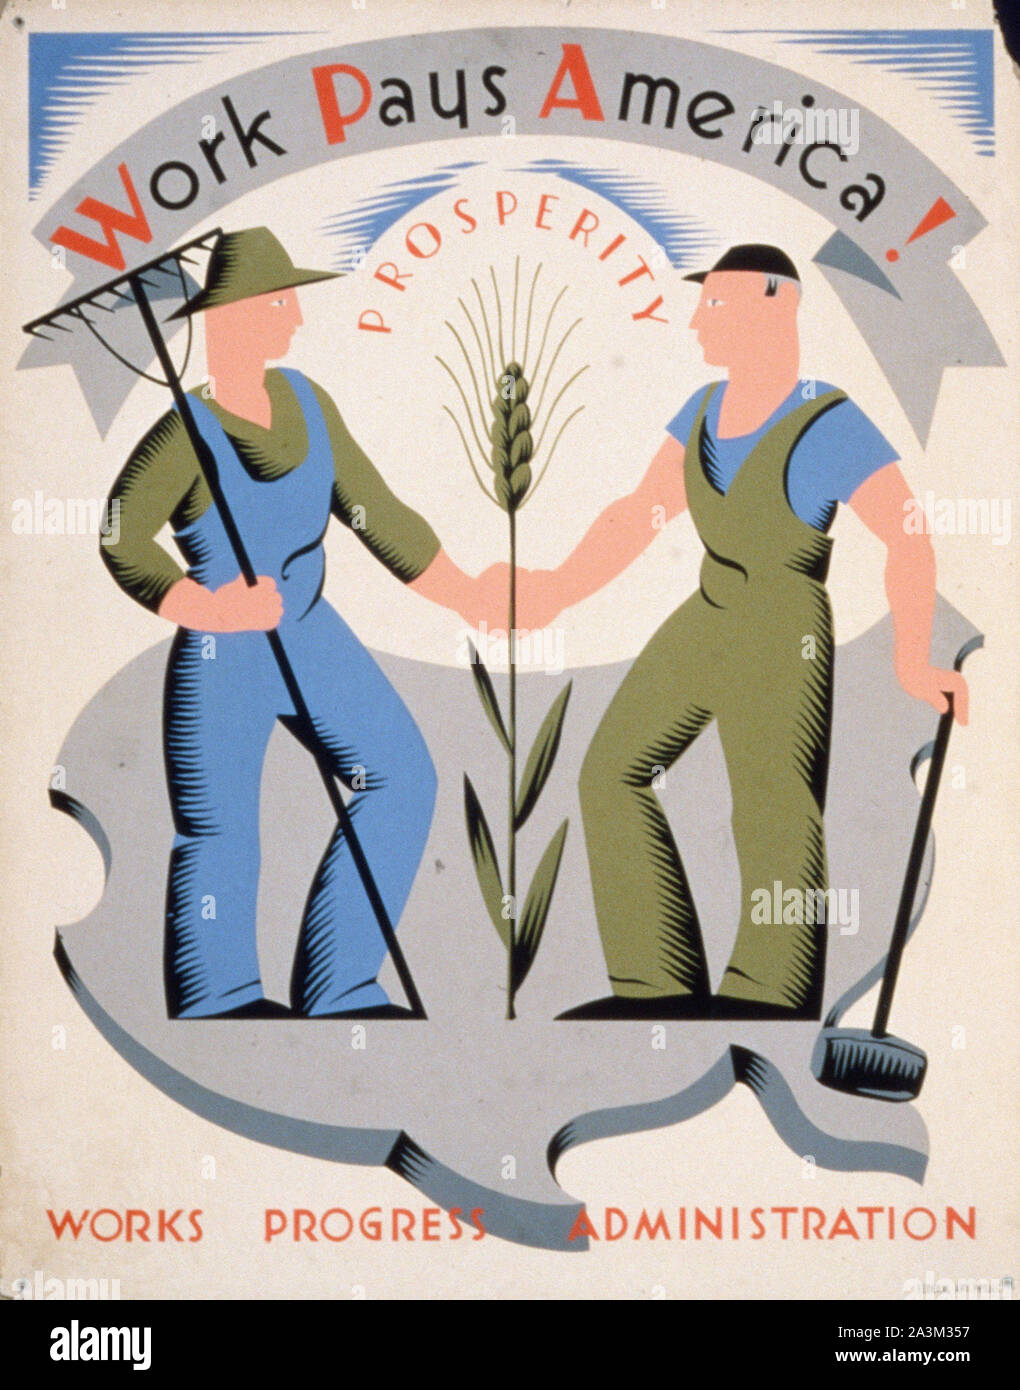 Il lavoro paga America ! - Avanzamento del lavoro Amministrazione - progetto federale di Arte - poster vintage Foto Stock